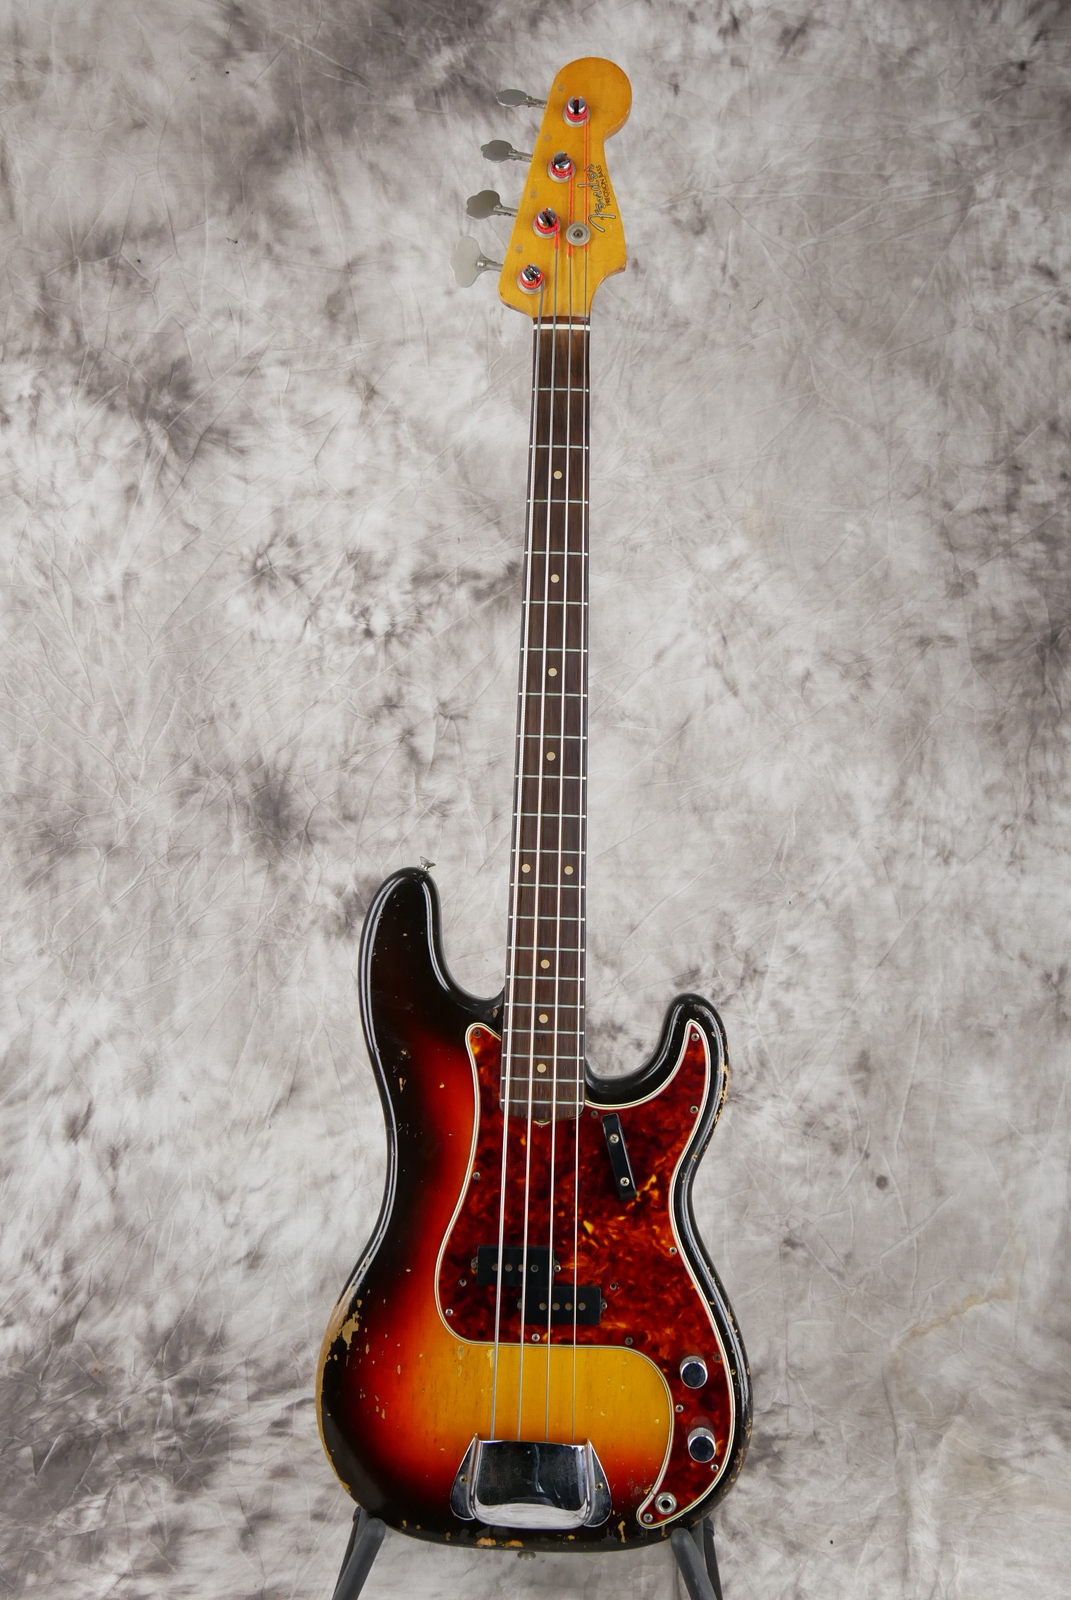 Fender_Precision_Bass_sunburst_1961-001.JPG